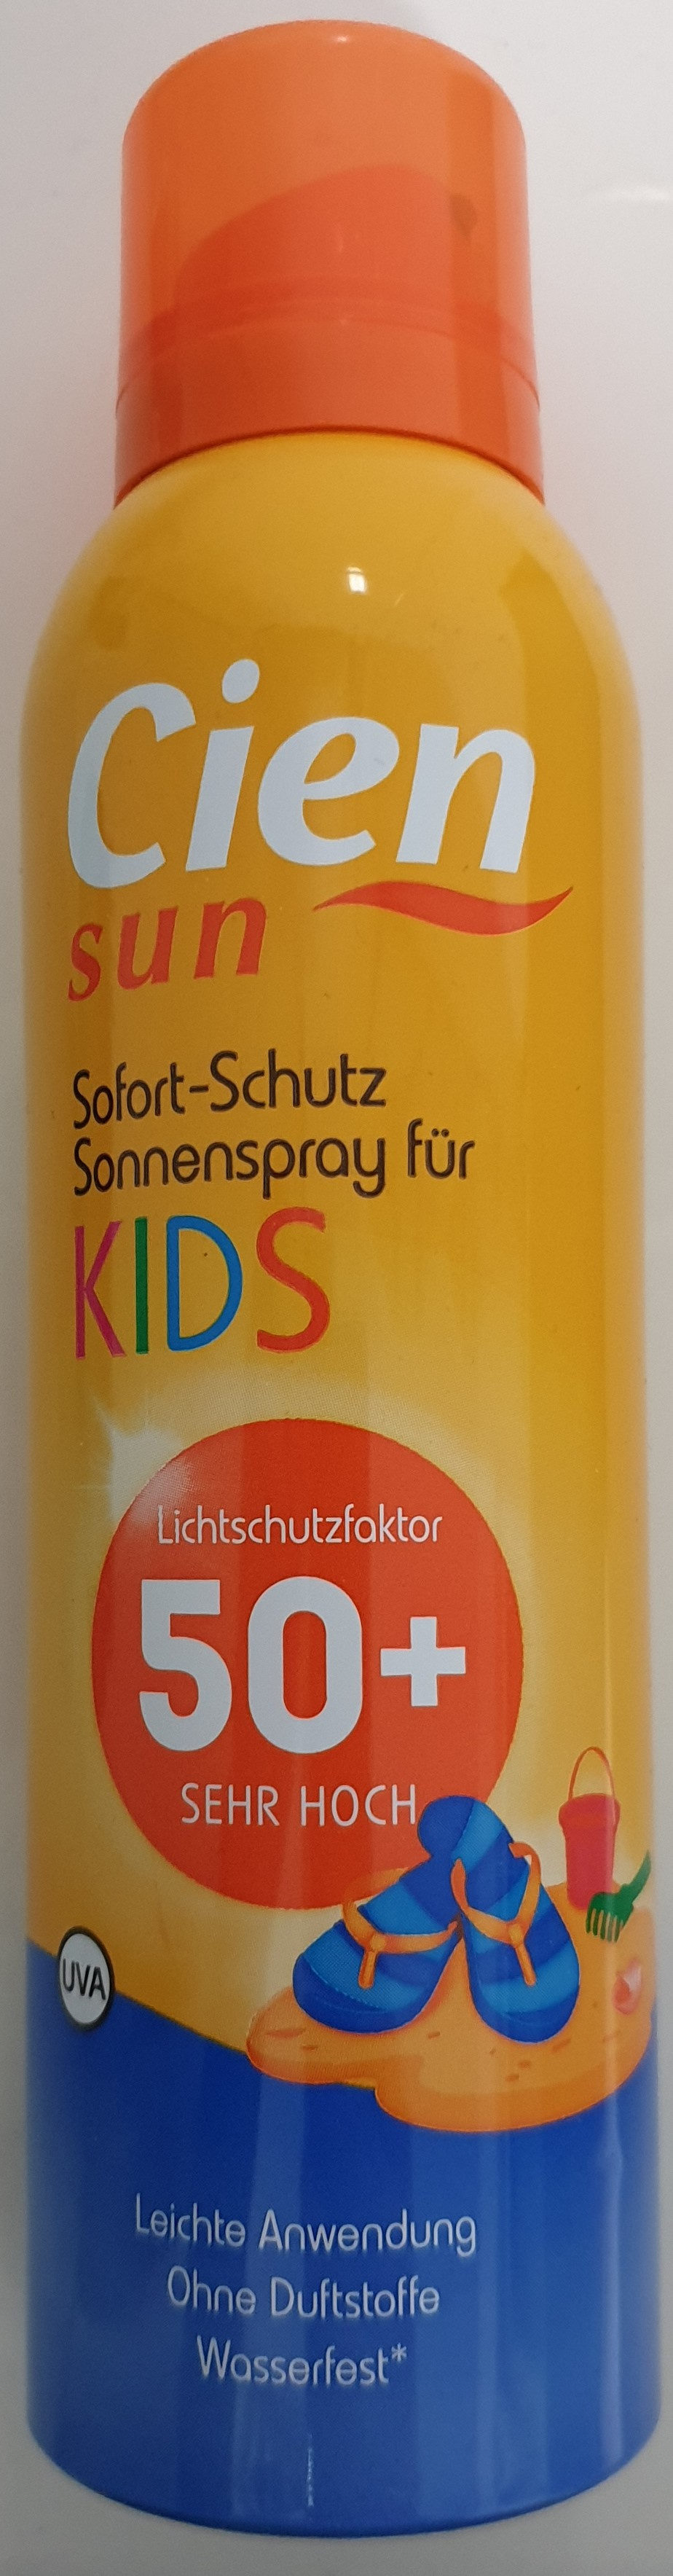 Sofort-Schutz Sonnenspray für Kids 50+ - Produkt - de